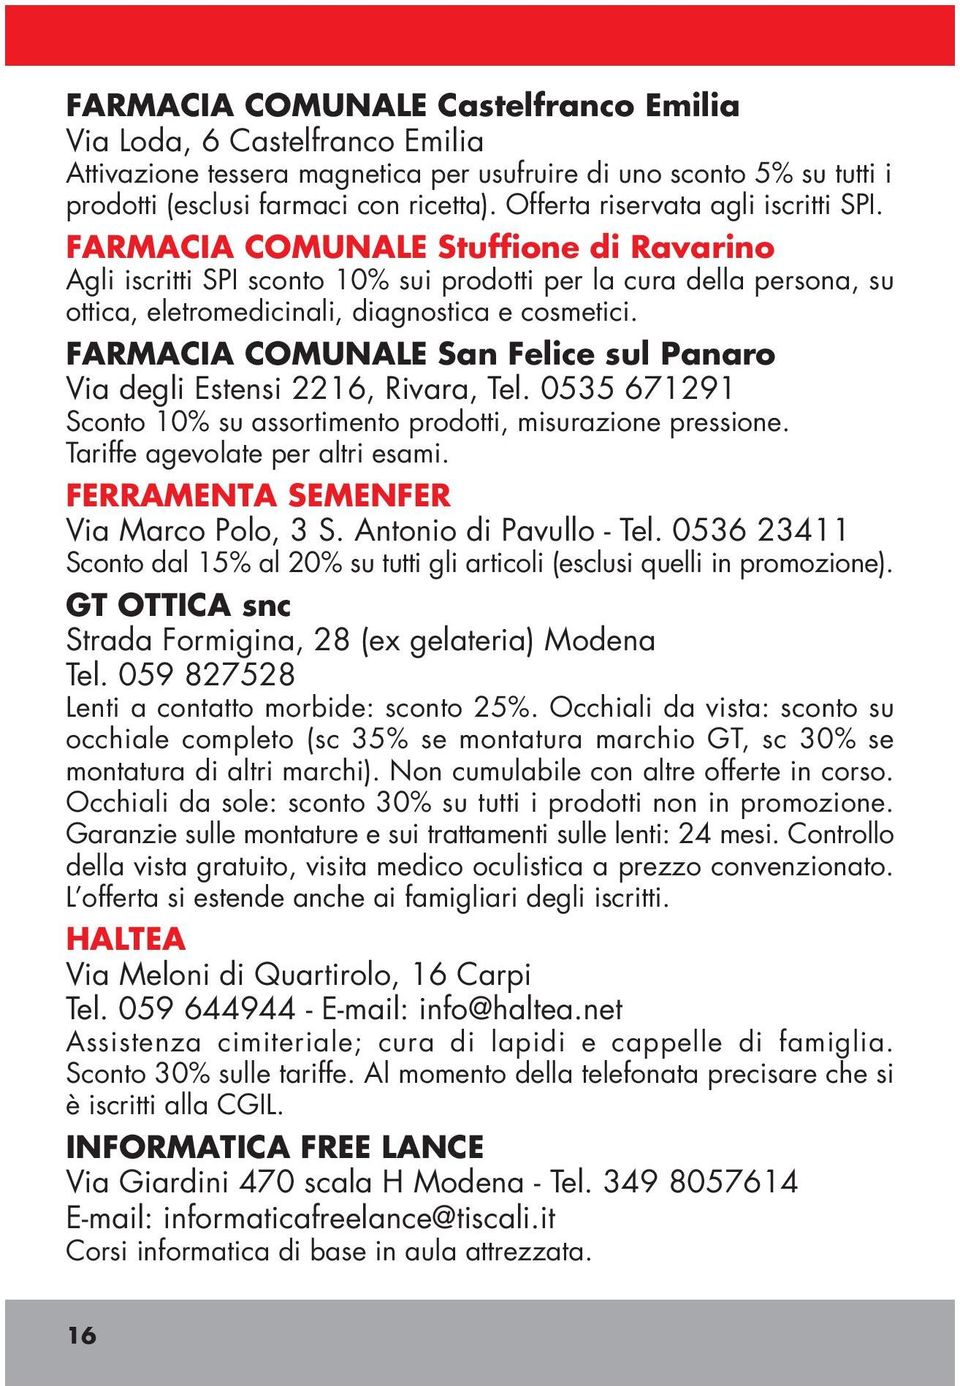 FARMACIA COMUNALE San Felice sul Panaro Via degli Estensi 2216, Rivara, Tel. 0535 671291 Sconto 10% su assortimento prodotti, misurazione pressione. Tariffe agevolate per altri esami.